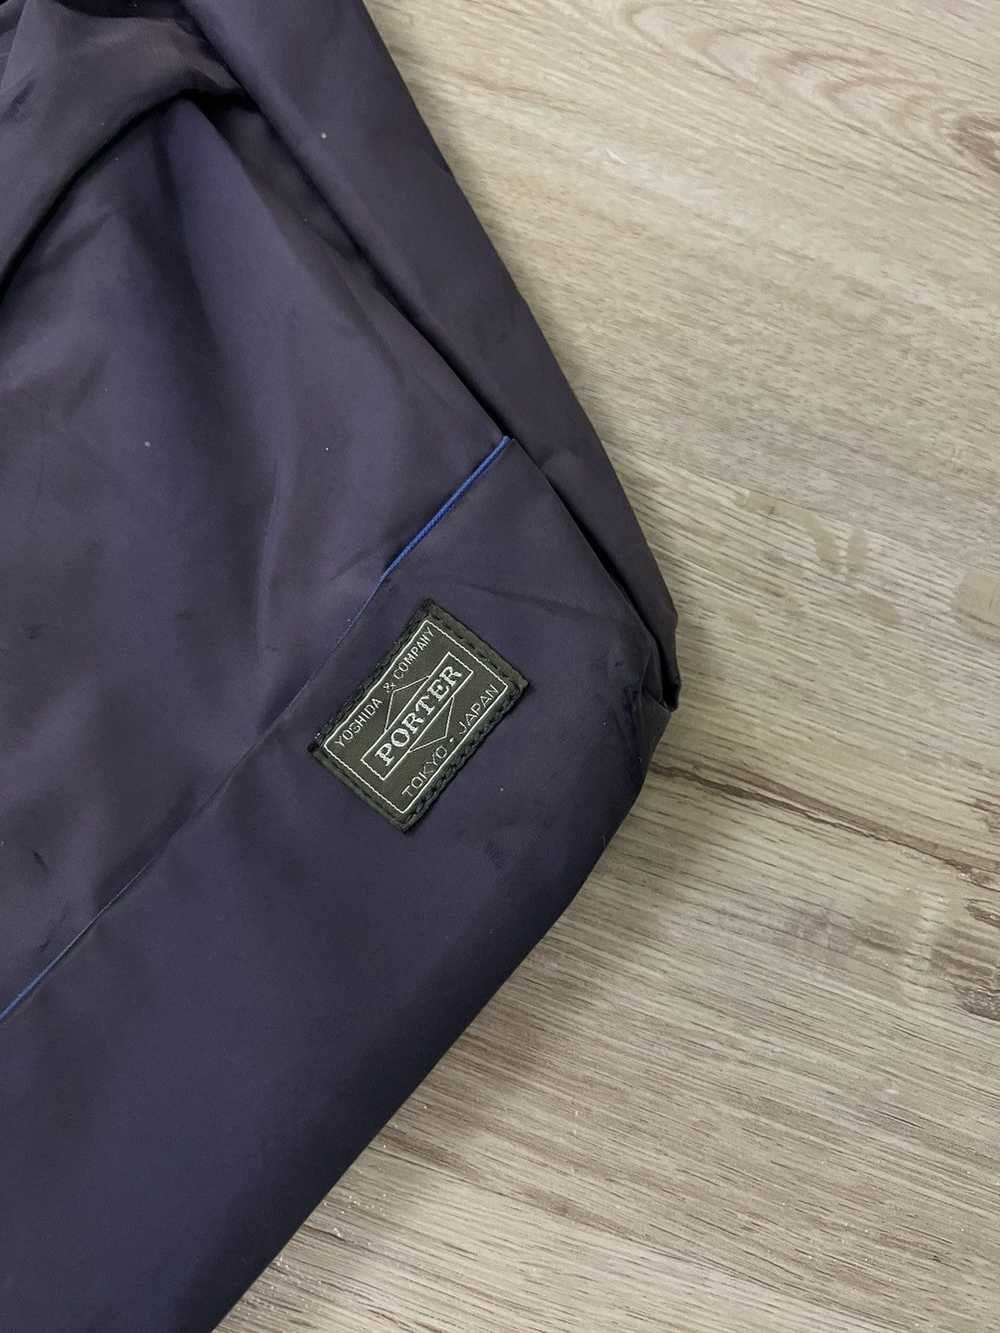 Japanese Brand × Porter Porter Sling Bag - image 2